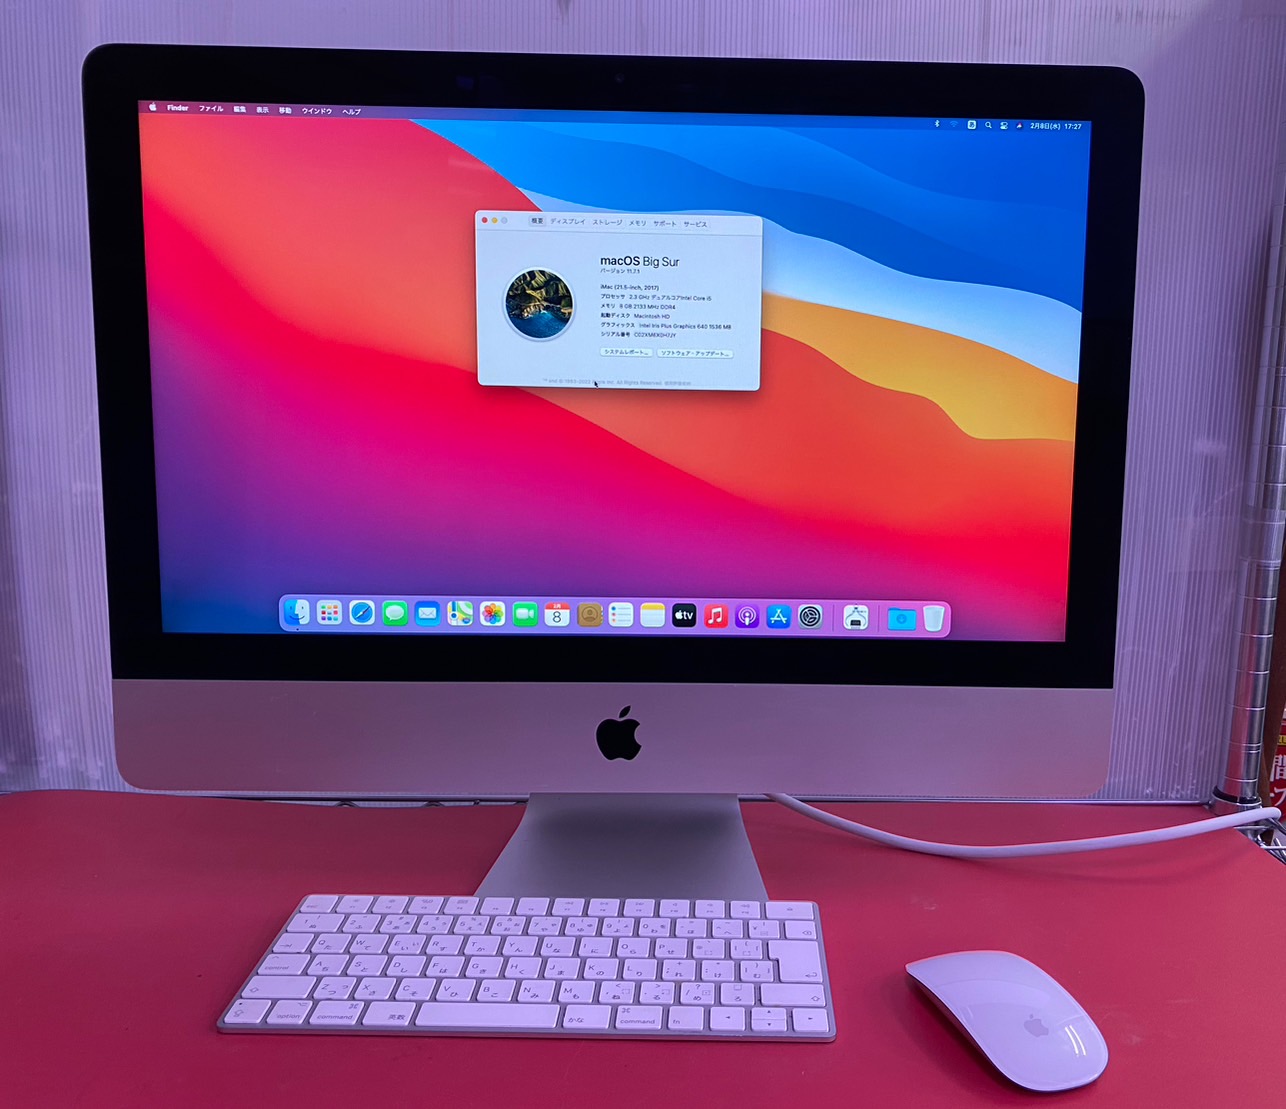 APPLE(アップル) iMac (21.5-inch, 2017) A1418の激安通販 - パソコン 